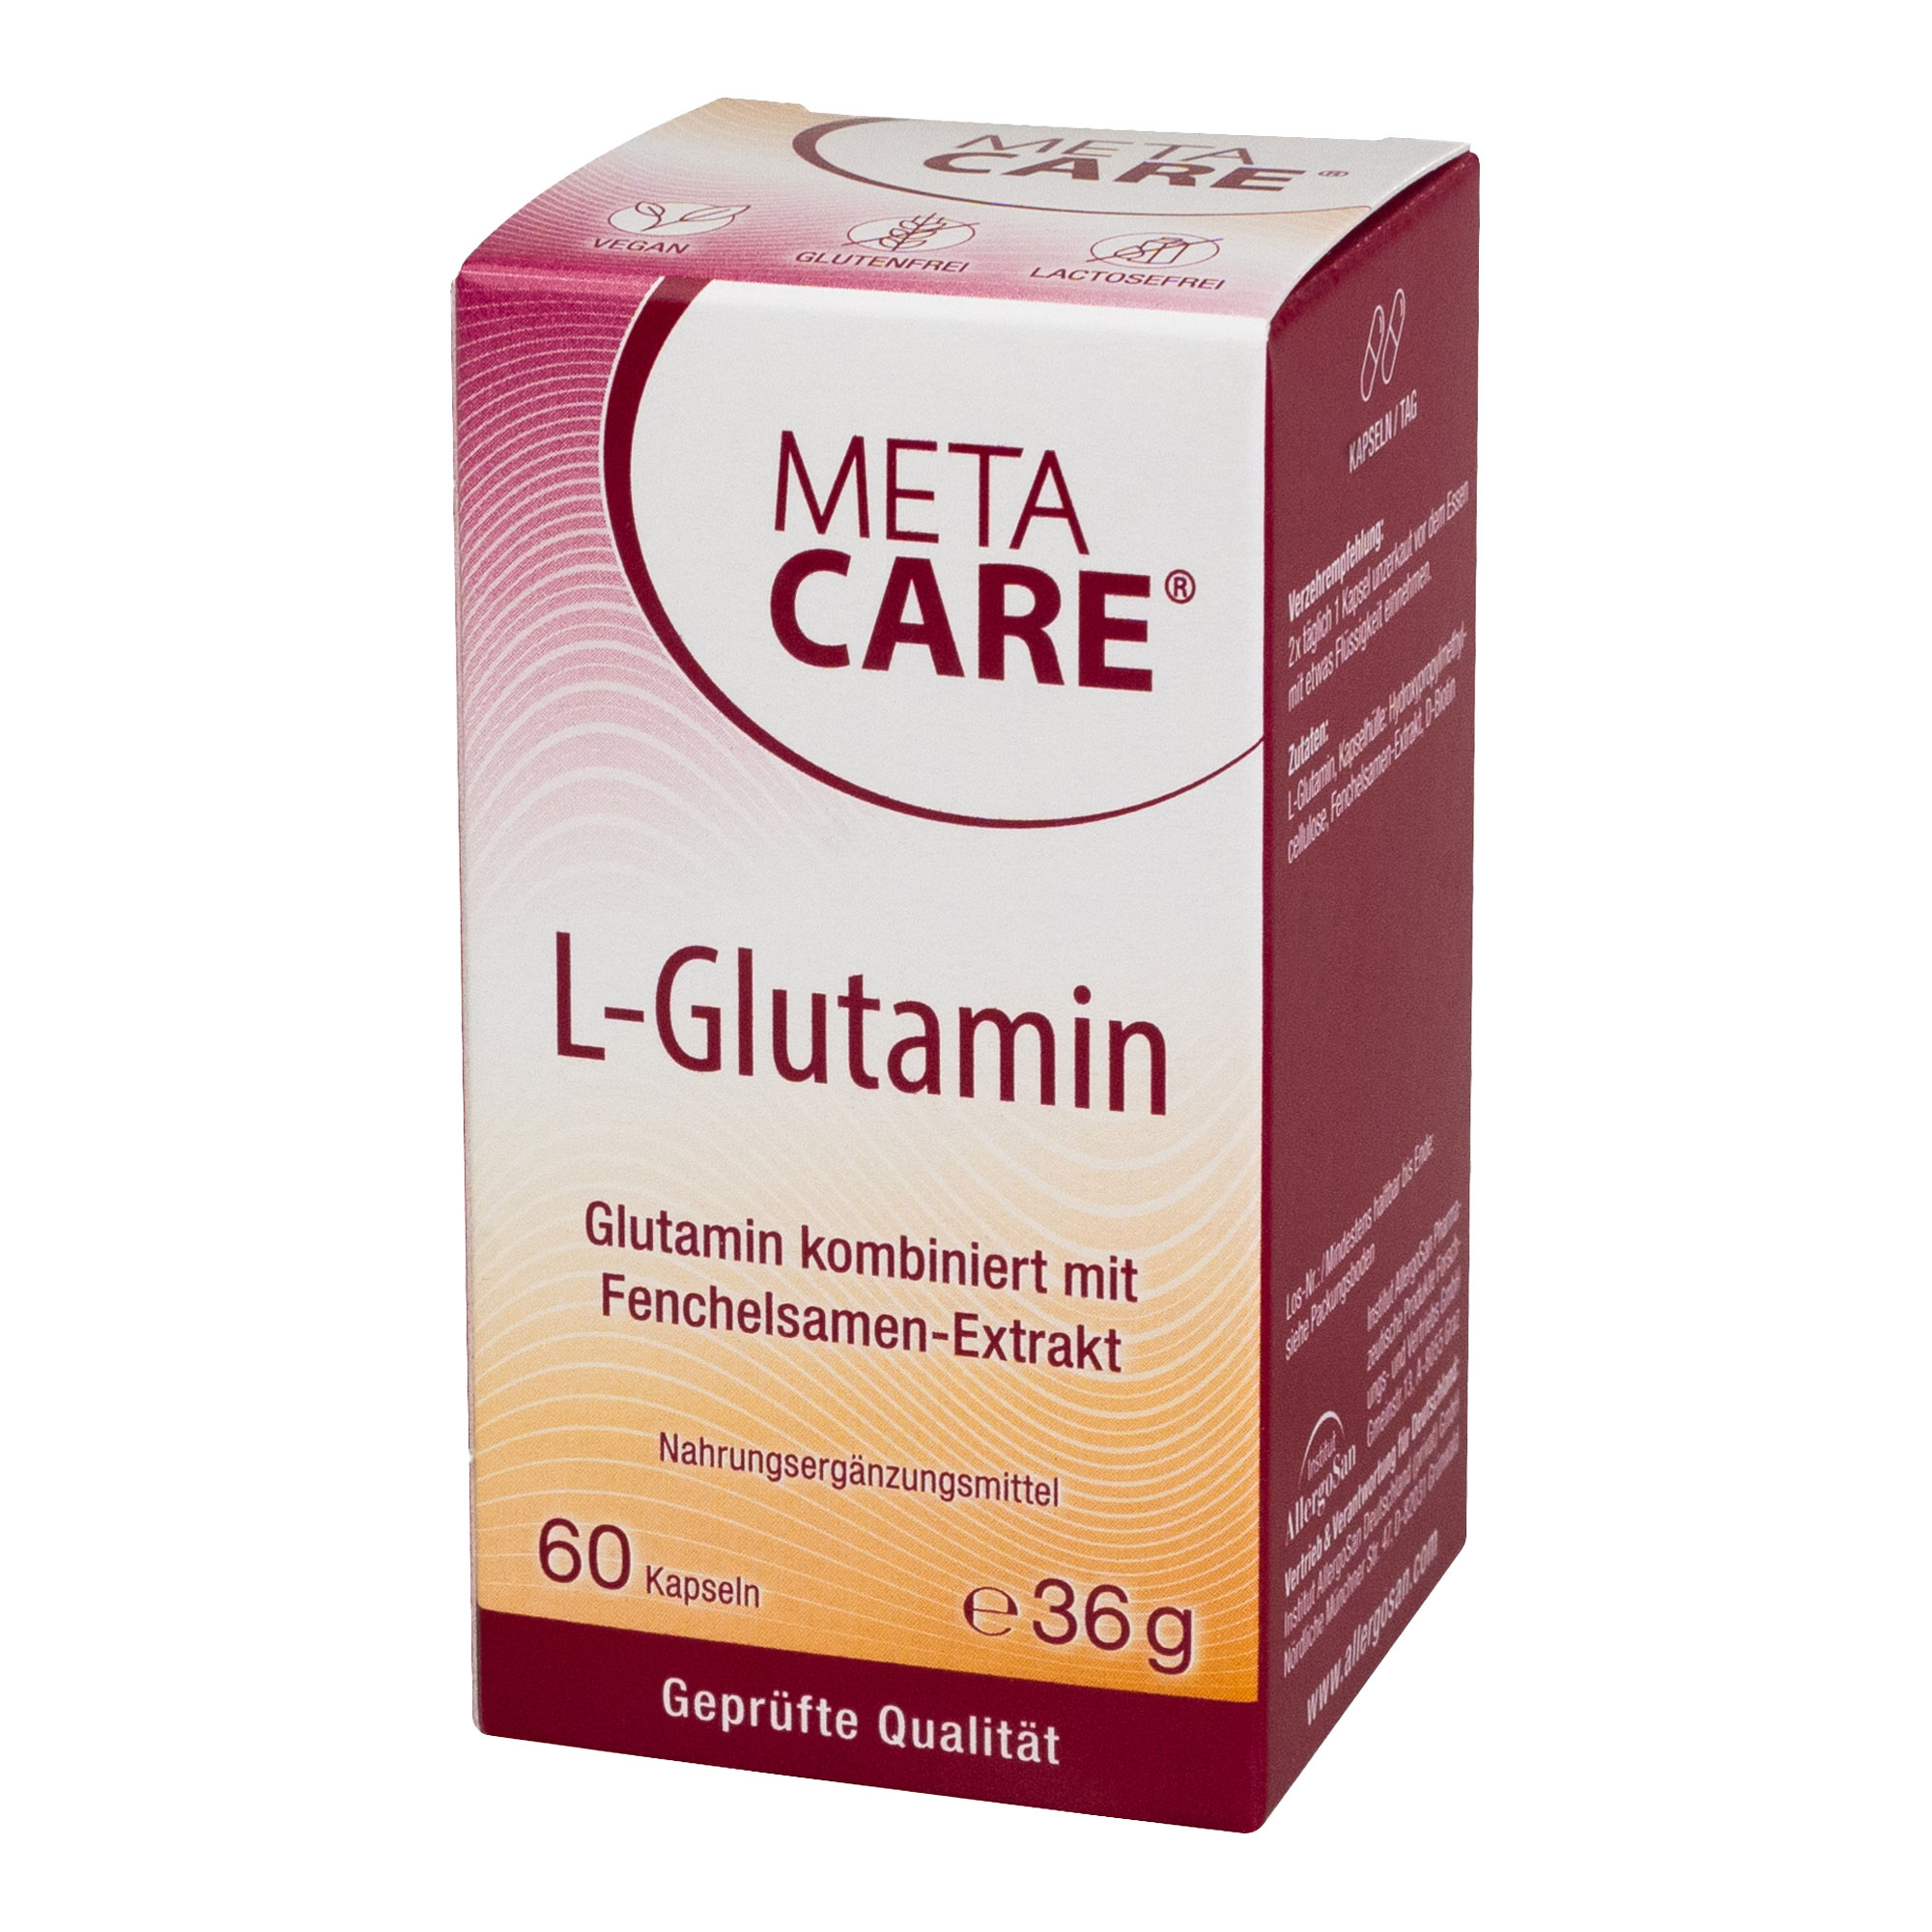 Nahrungsergänzungsmittel aus Glutamin kombiniert mit Fenchelsamen-Extrakt.